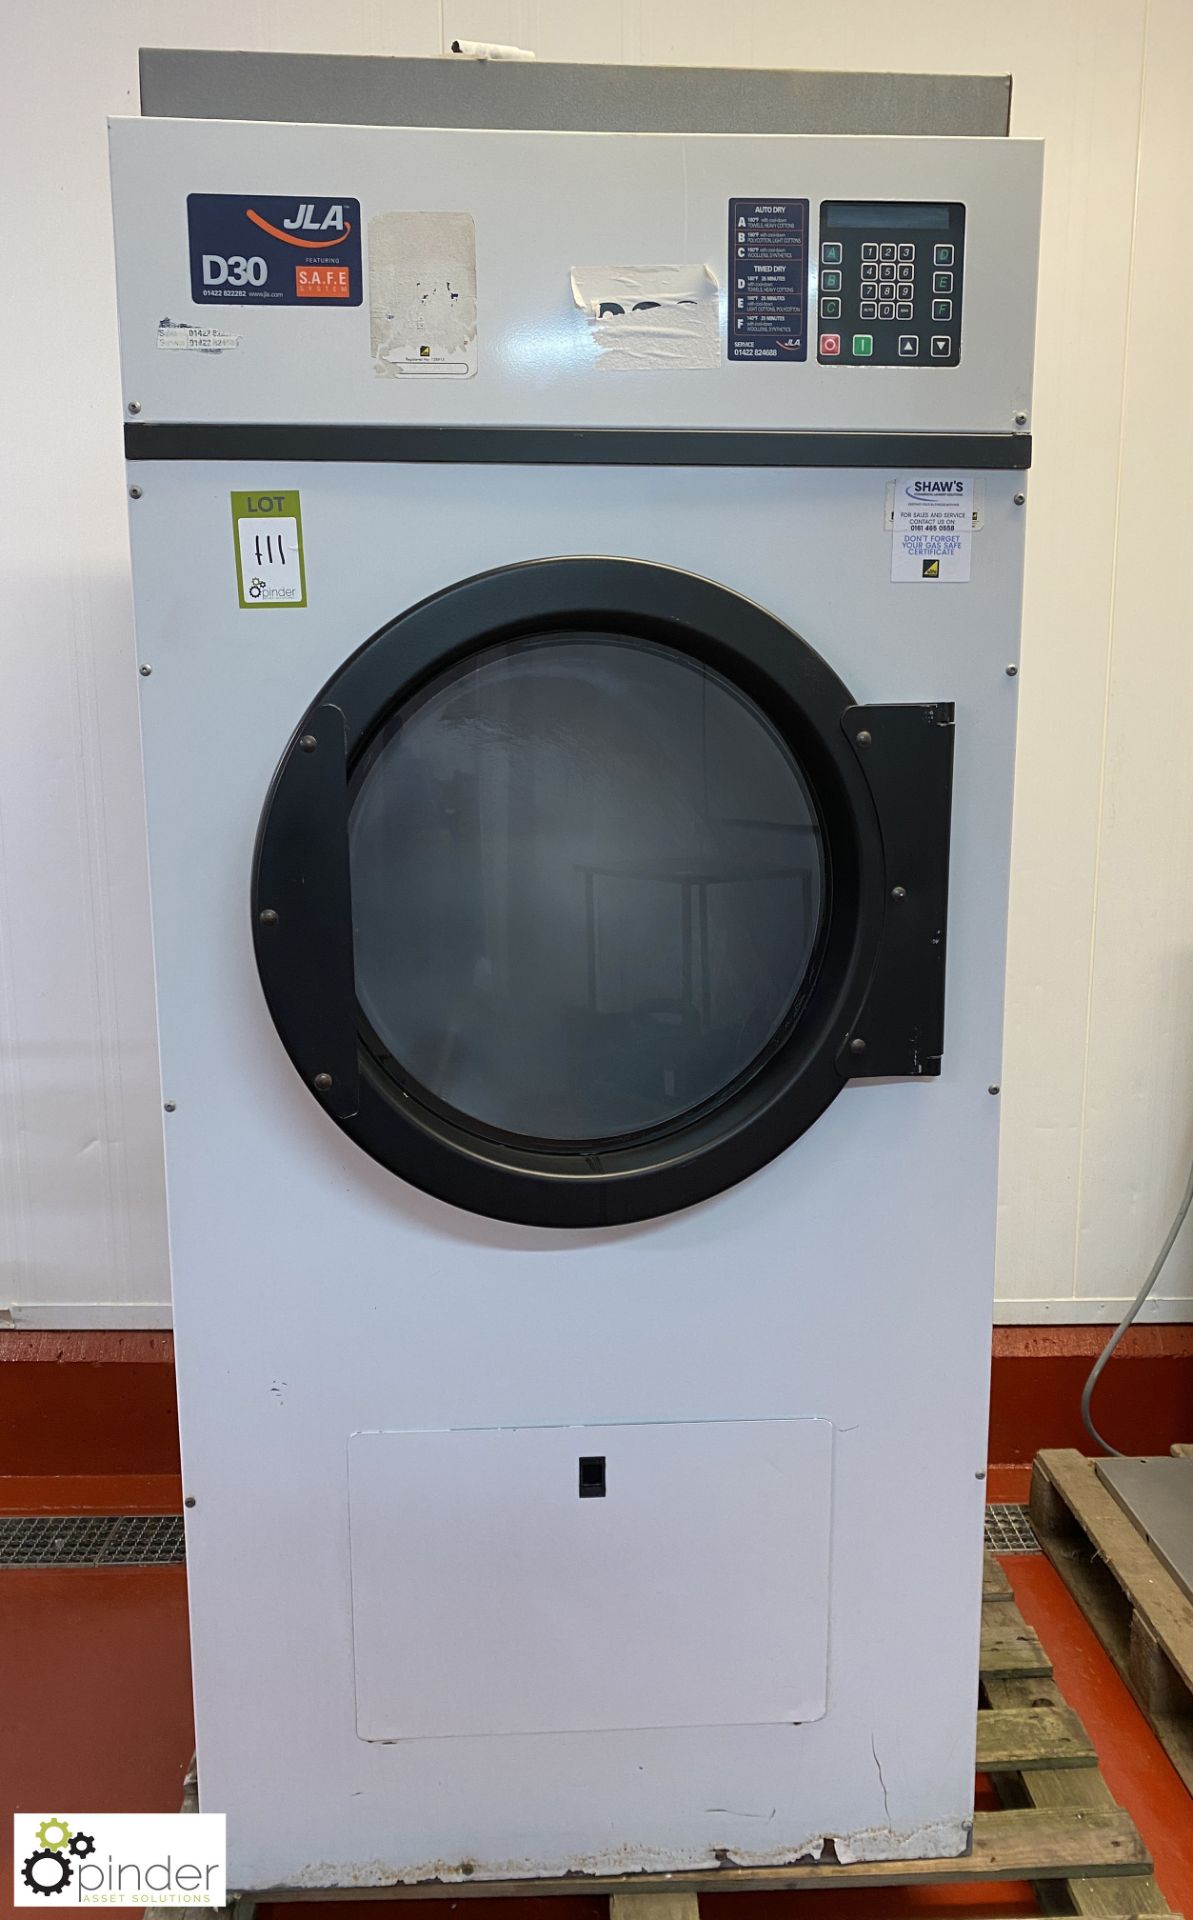 JLA 030 Commercial Tumble Dryer, 400volts (Lift Out Fee: £30 plus VAT)